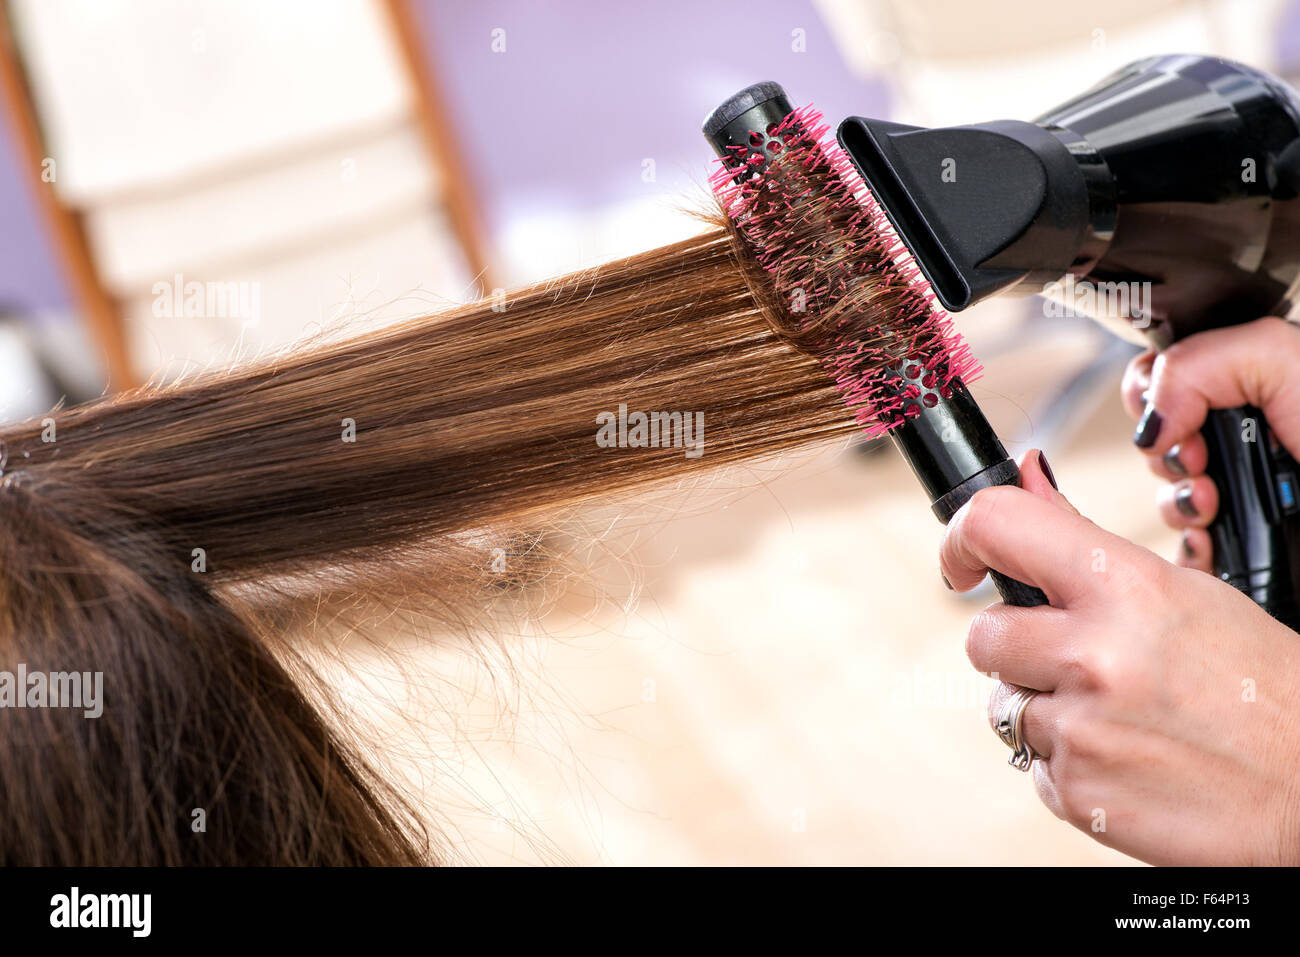 Friseur Föhnen lange braune Haare mit einem runden Pinsel, Lift und Volumen  das Haar vorzustellen Stockfotografie - Alamy